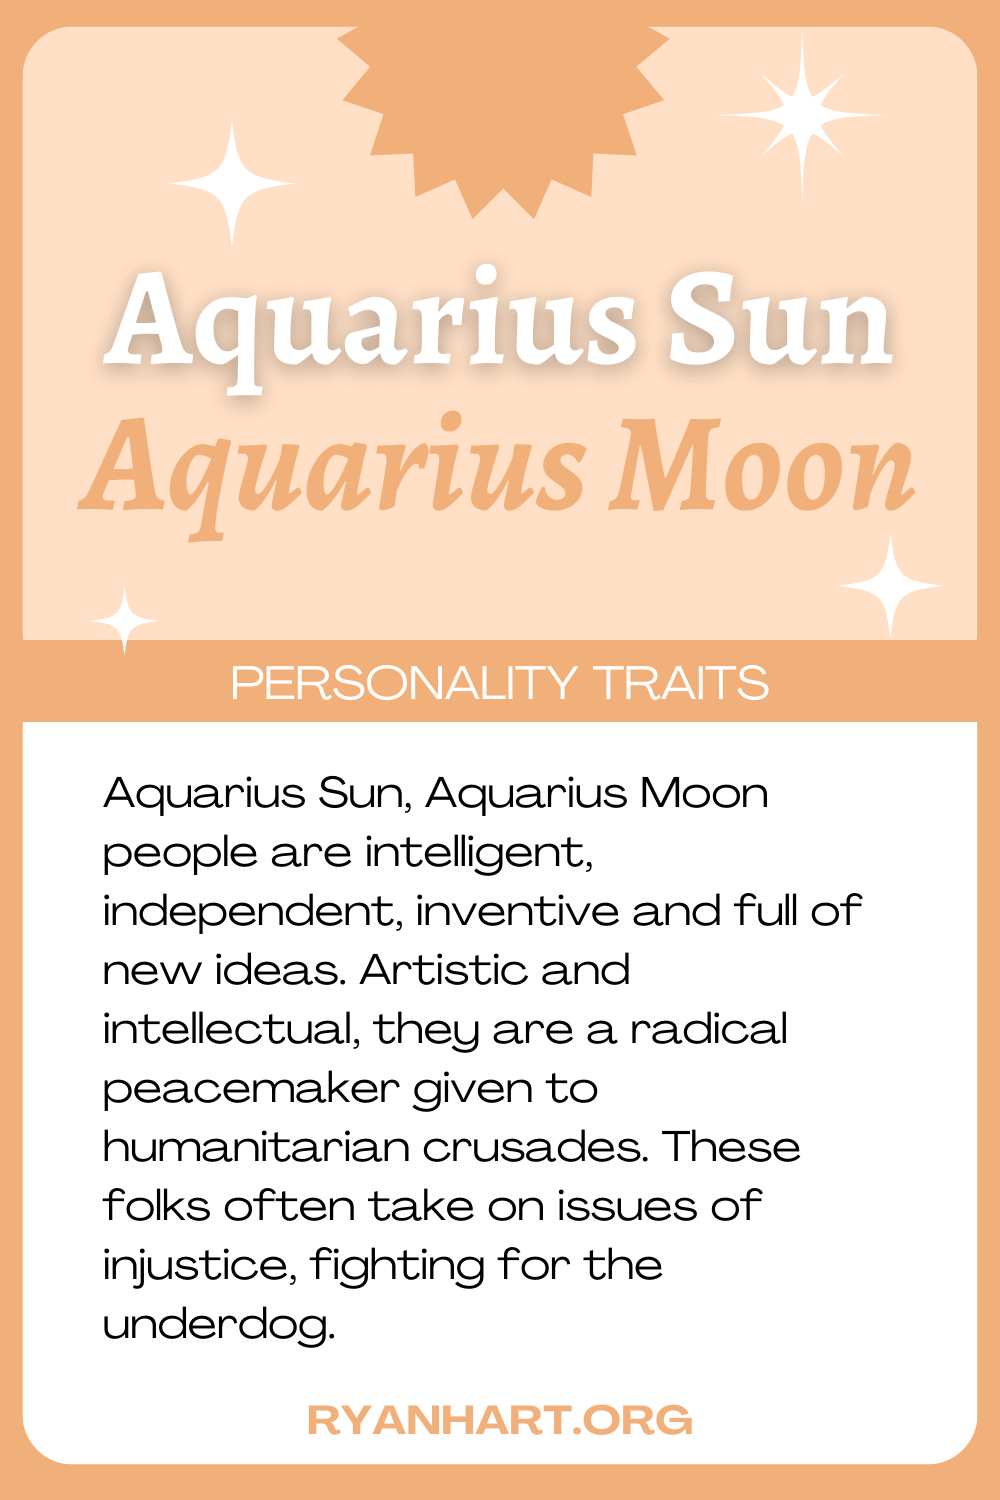 Aquarius Sun Aquarius Moon Description